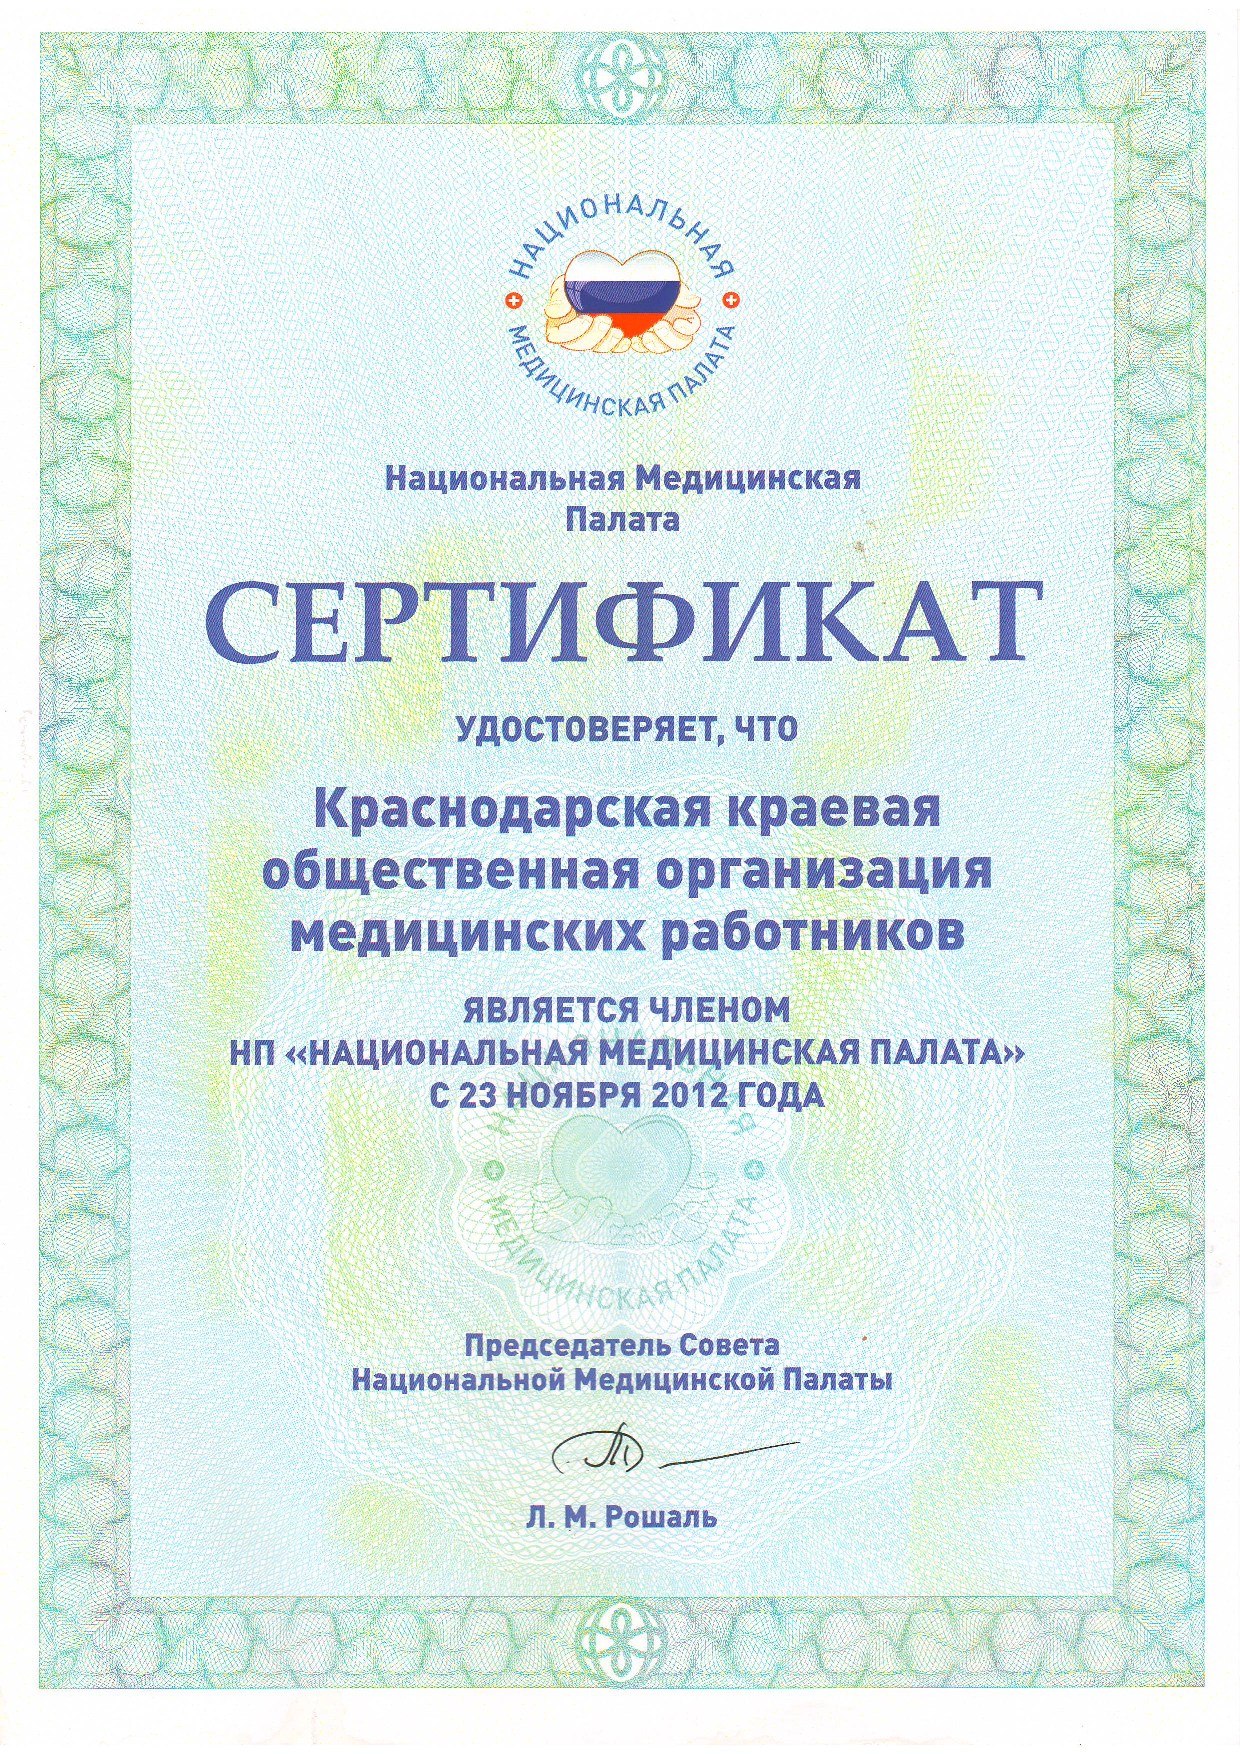 Сертификат о членстве в НП 